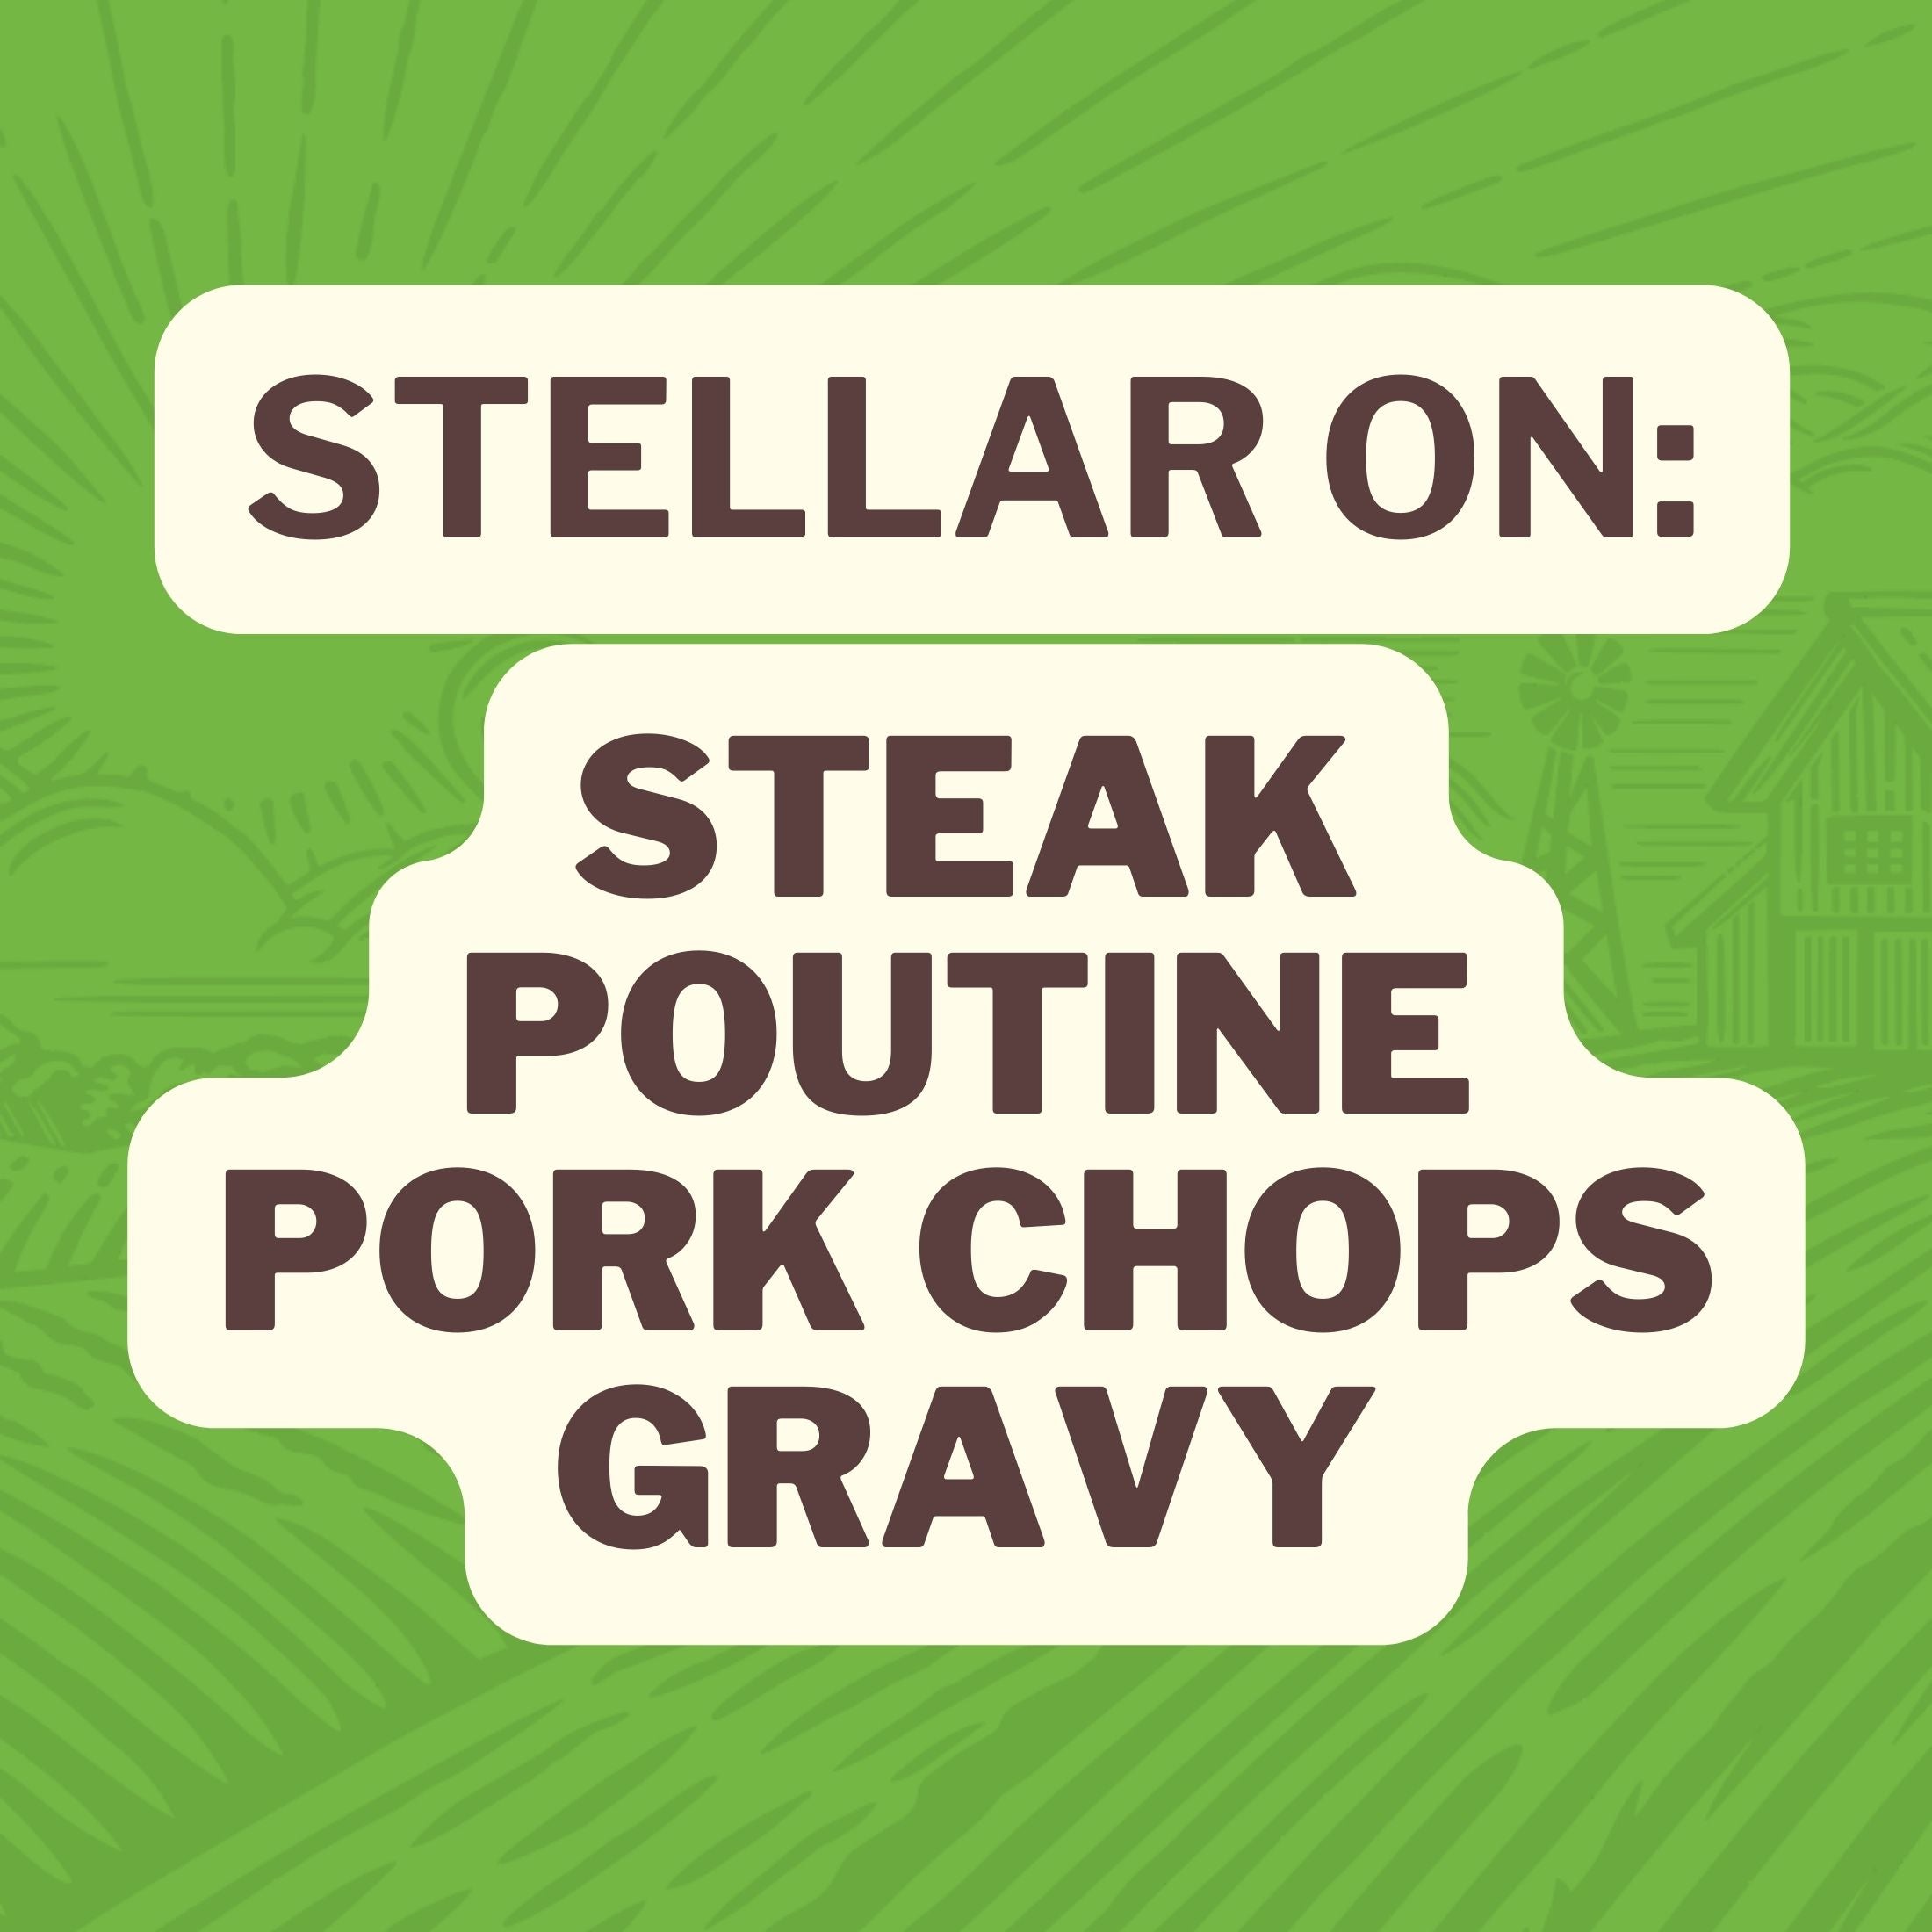 Gril Master Steak Seasoning is Stellar On: Steak, Poutine, Pork Chops, and Gravy